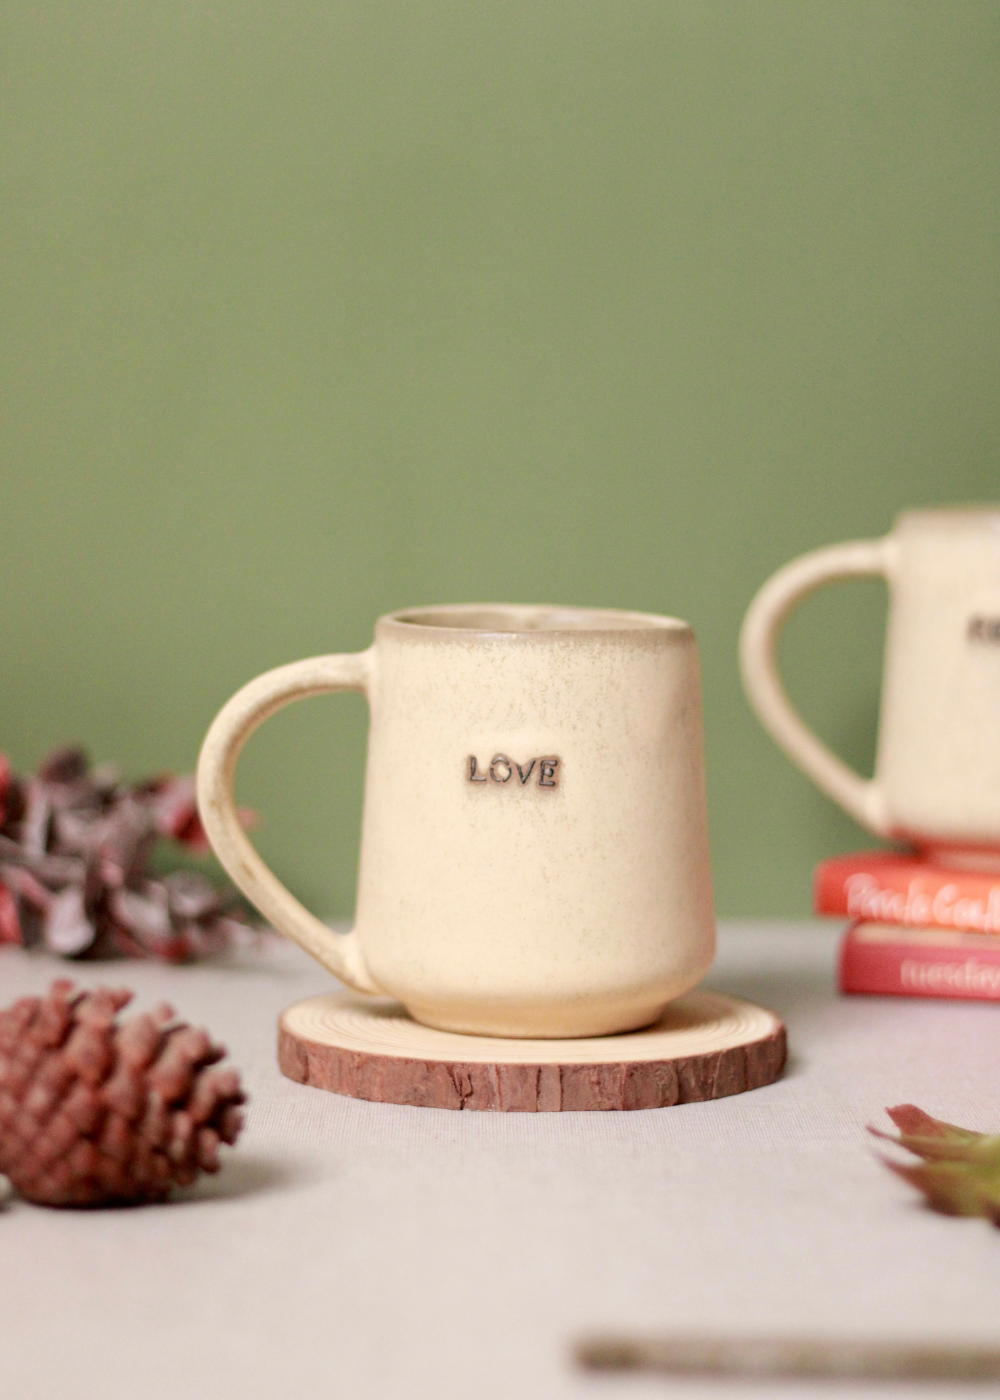 LOVE ceramic mug